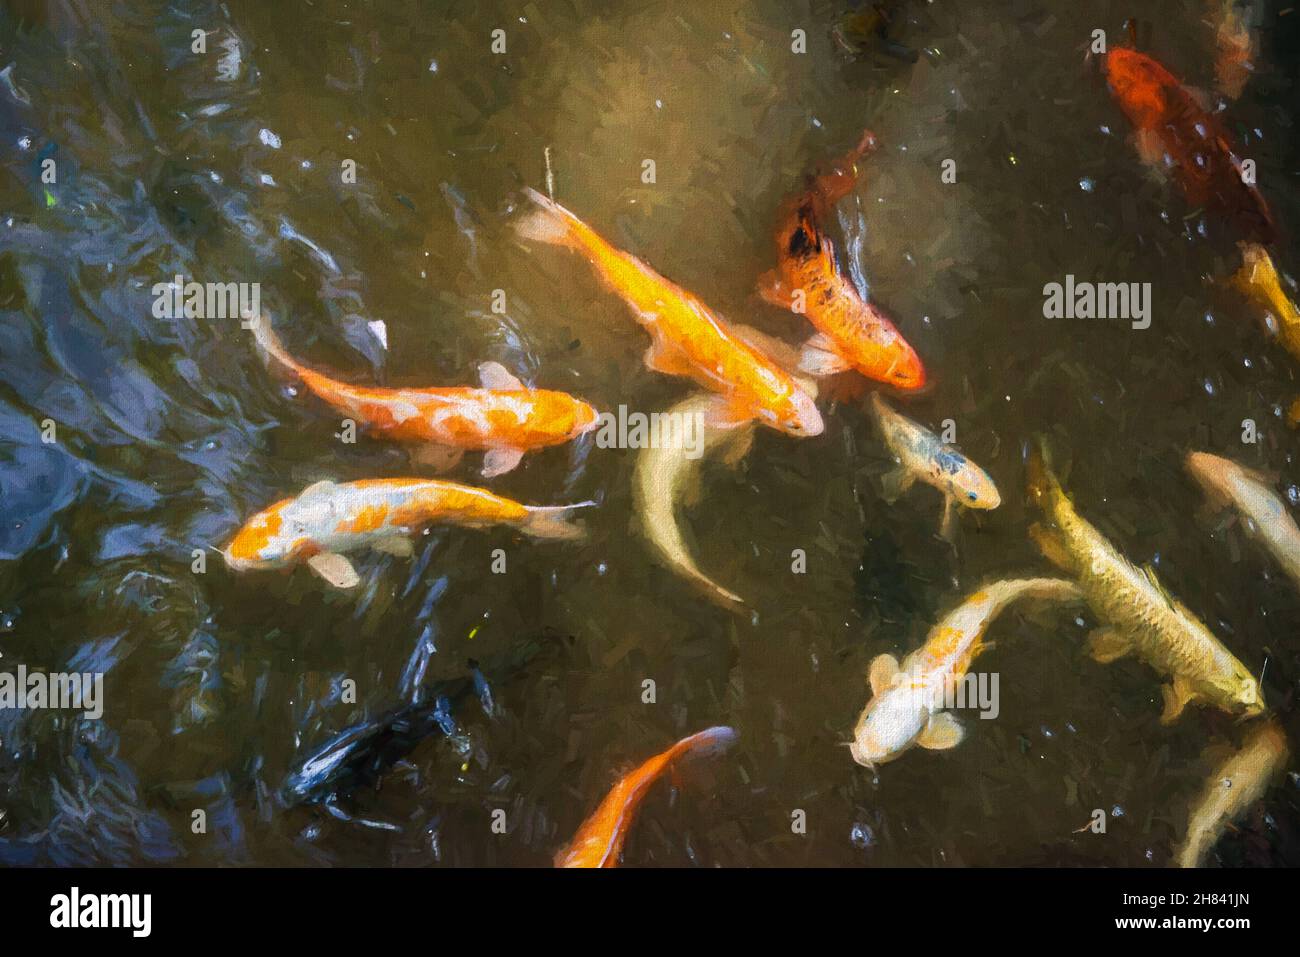 Mehrfarbige Goldfische / Koi-Fische oder Karpfen zielen in einen Teich mit dem warmen goldenen Sonnenlicht, das auf eine Zen-artige entspannende Weise in den See hinunterscheint Stockfoto